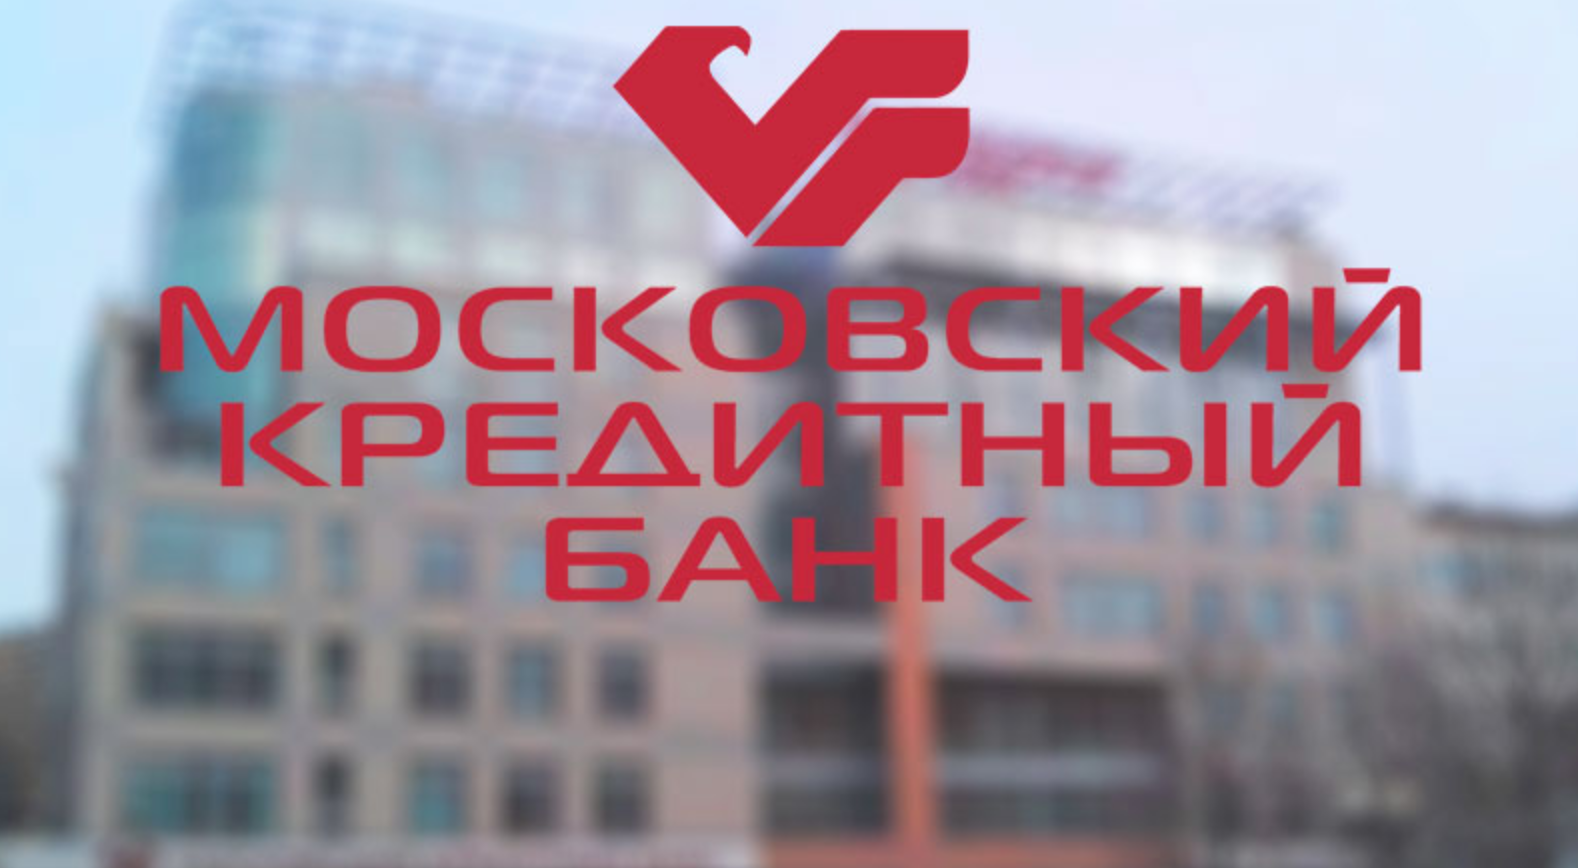 Московский Кредитный Банк принял участие в работе саммита «Аграрная политика России. Настоящее и будущее»